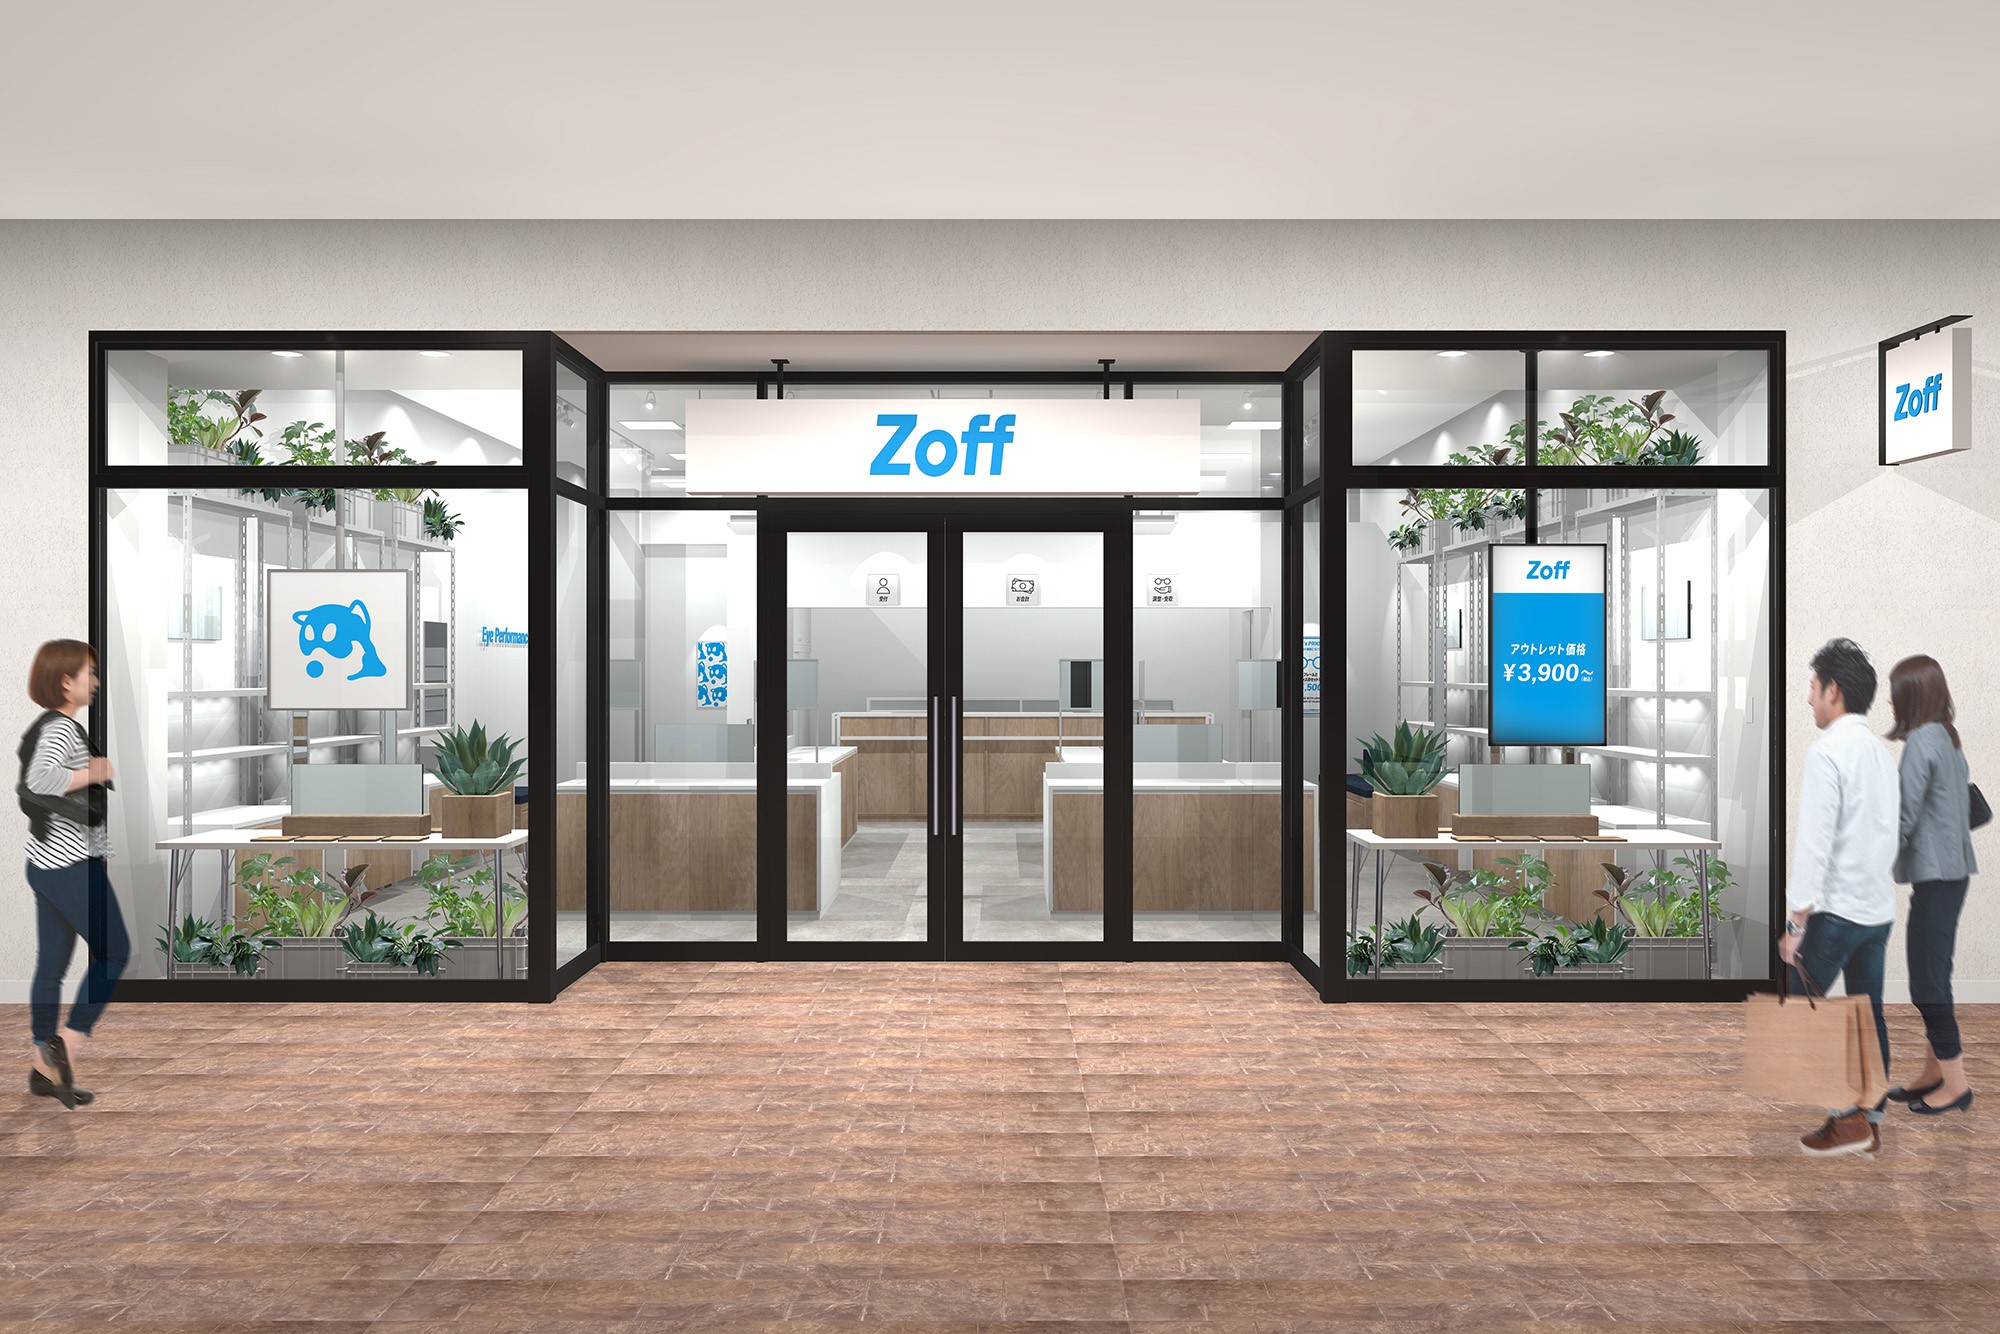 メガネブランドZoffが滋賀県に近畿エリア初となるアウトレット店舗『Zoff 三井アウトレットパーク滋賀竜王店』を2022年9月22日（木）にオープン